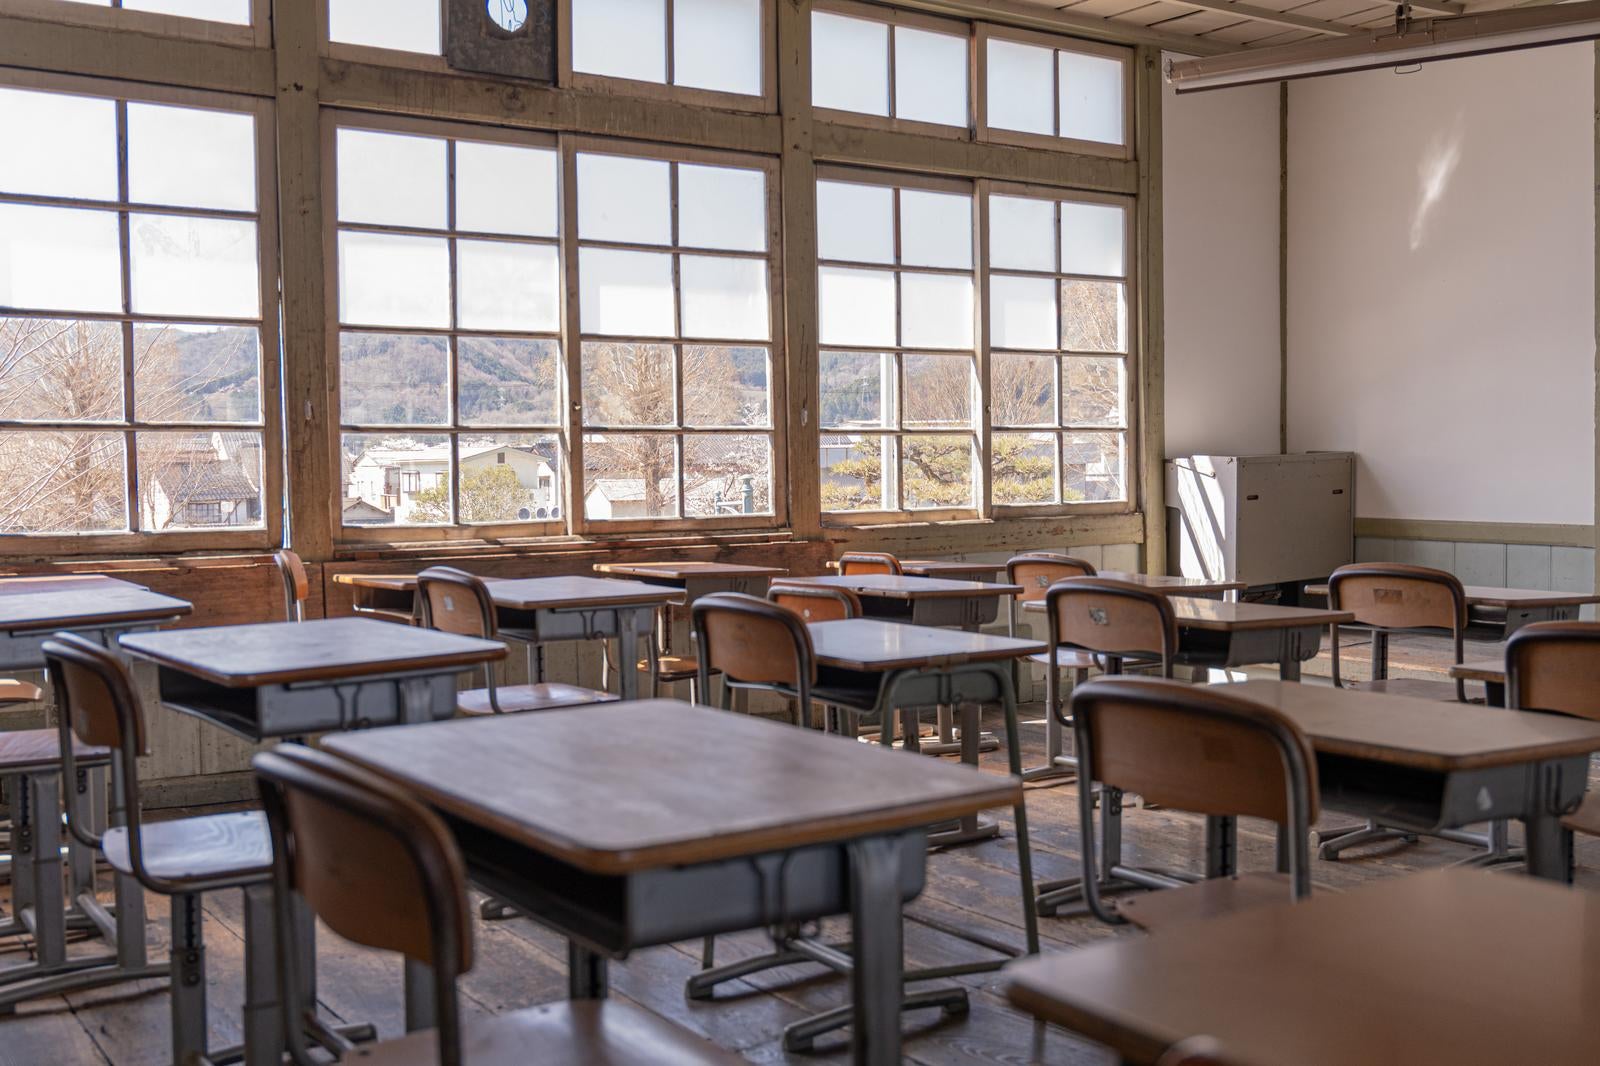 「教室の窓と教室の風景」の写真